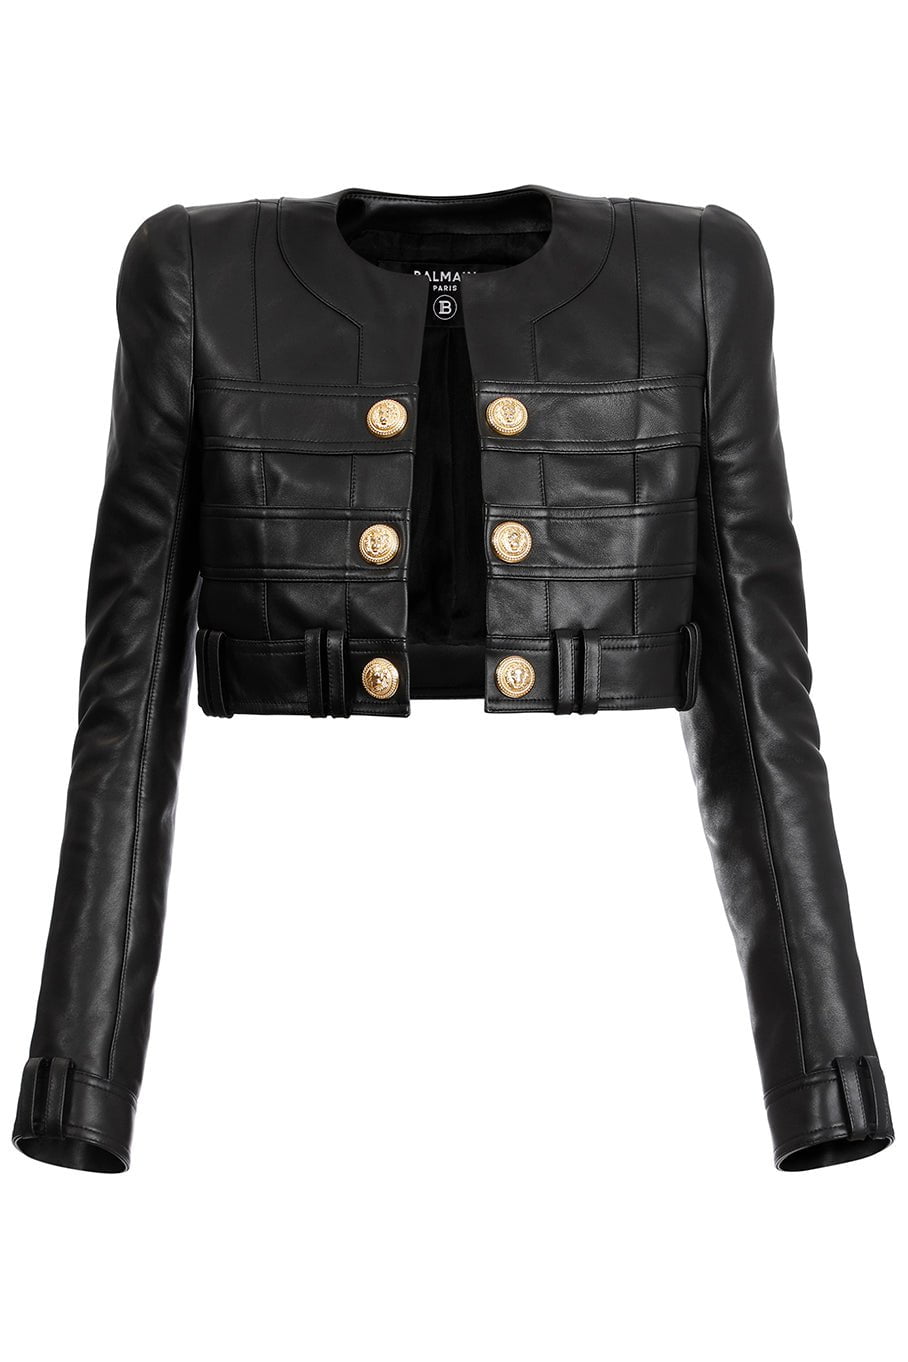 BALMAIN-Leather Cropped Jacket-